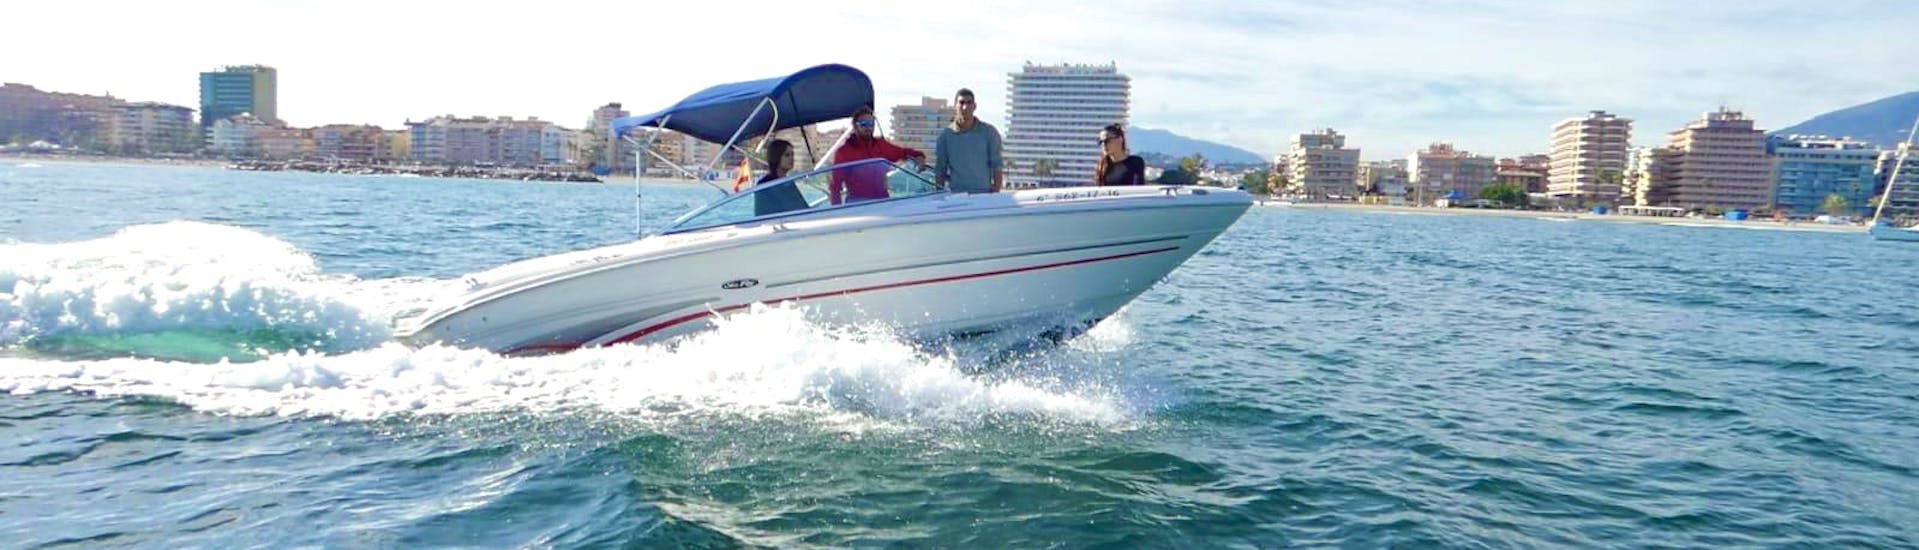 Una lussuosa imbarcazione SEA RAY SELECT 200 in crociera lungo il Mare di Alboran durante il Noleggio barca a Marbella (fino a 8 persone) con patente nautica con Marbella Renting Boat.